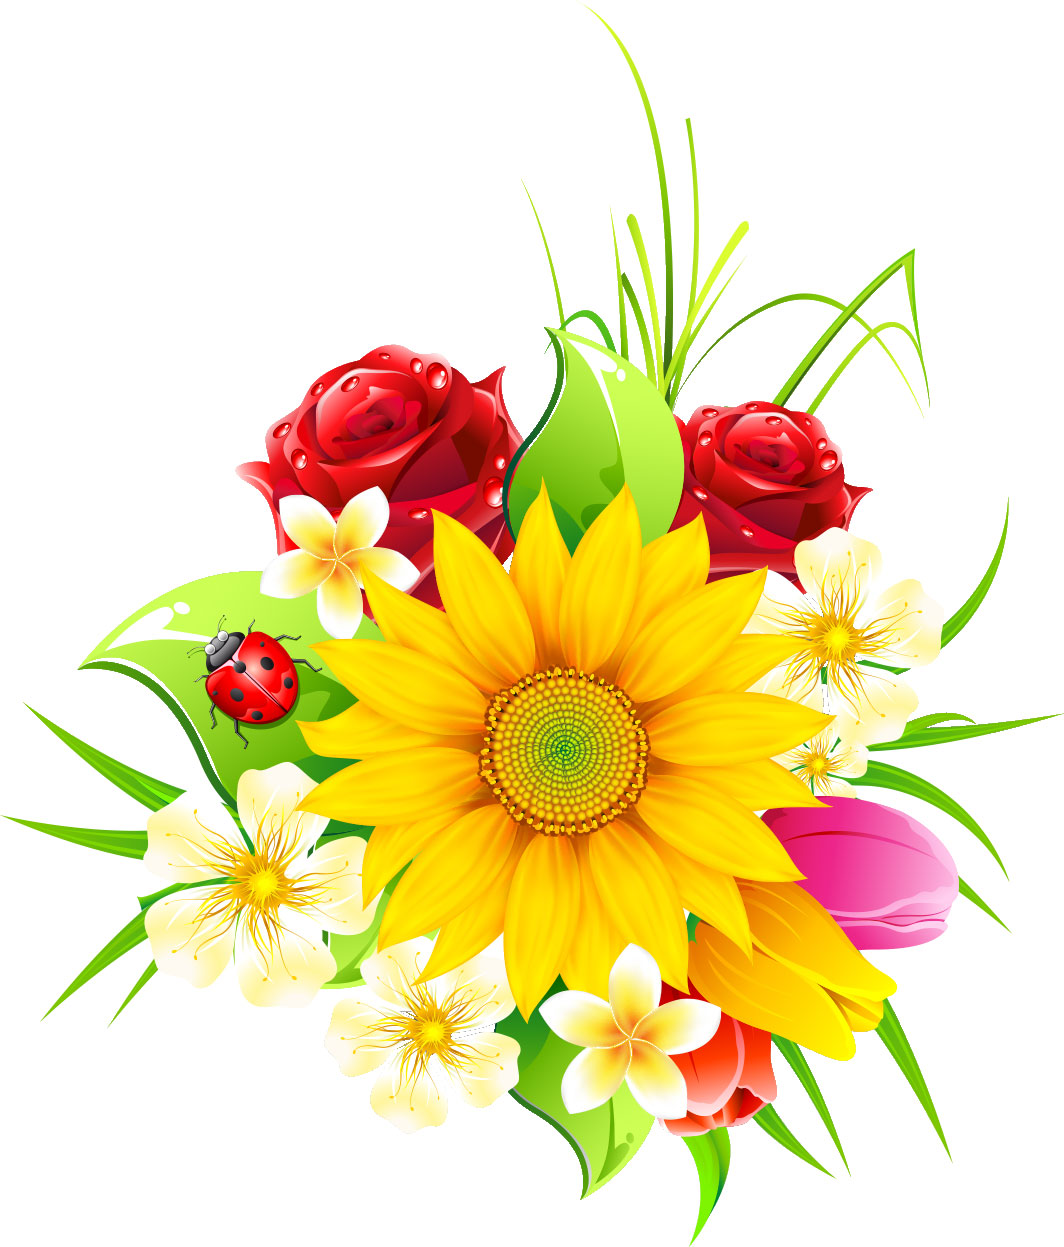 画像サンプル-色々な花の束・リアル